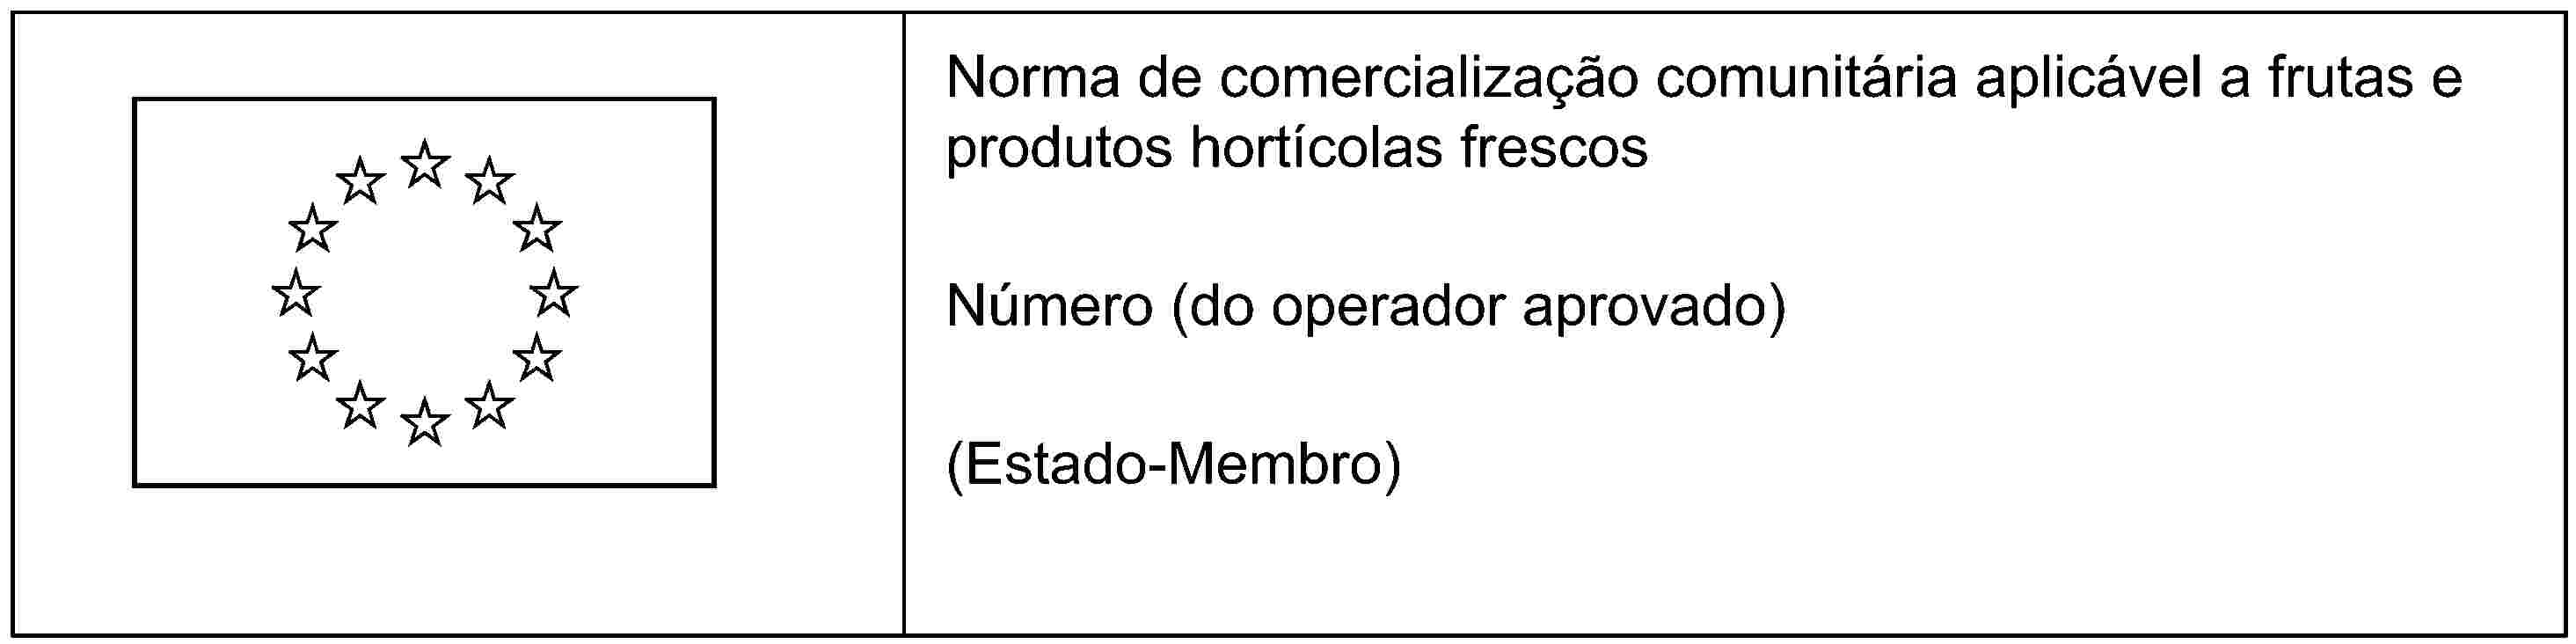 Norma de comercialização comunitária aplicável a frutas e produtos hortícolas frescosNúmero (do operador aprovado)(Estado-Membro)